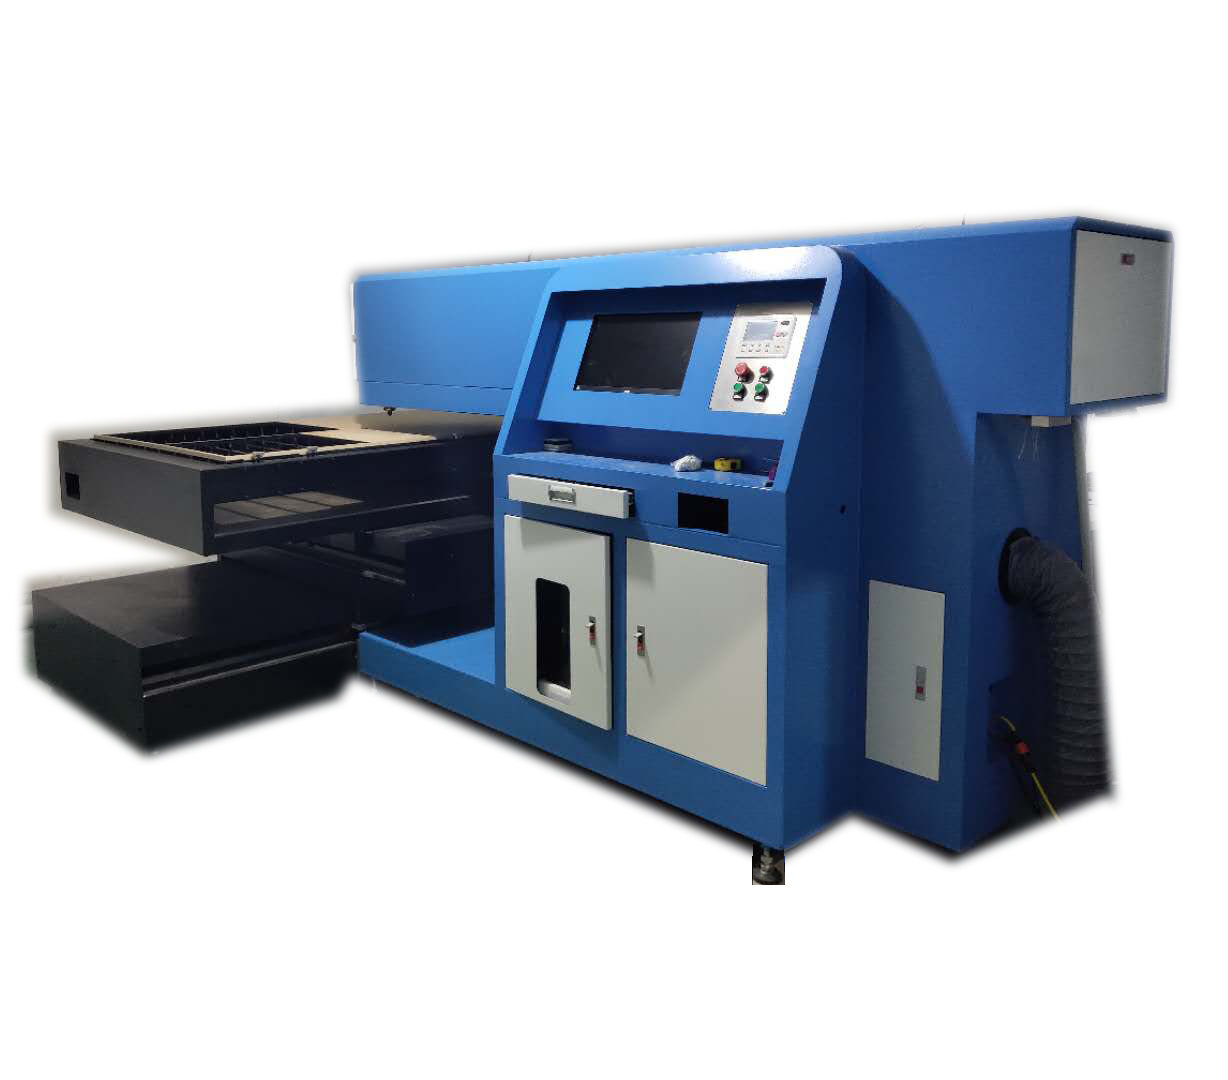 Machine de découpe laser à faible coût pour le panneau de contreplaqué Die / fabrication de moules